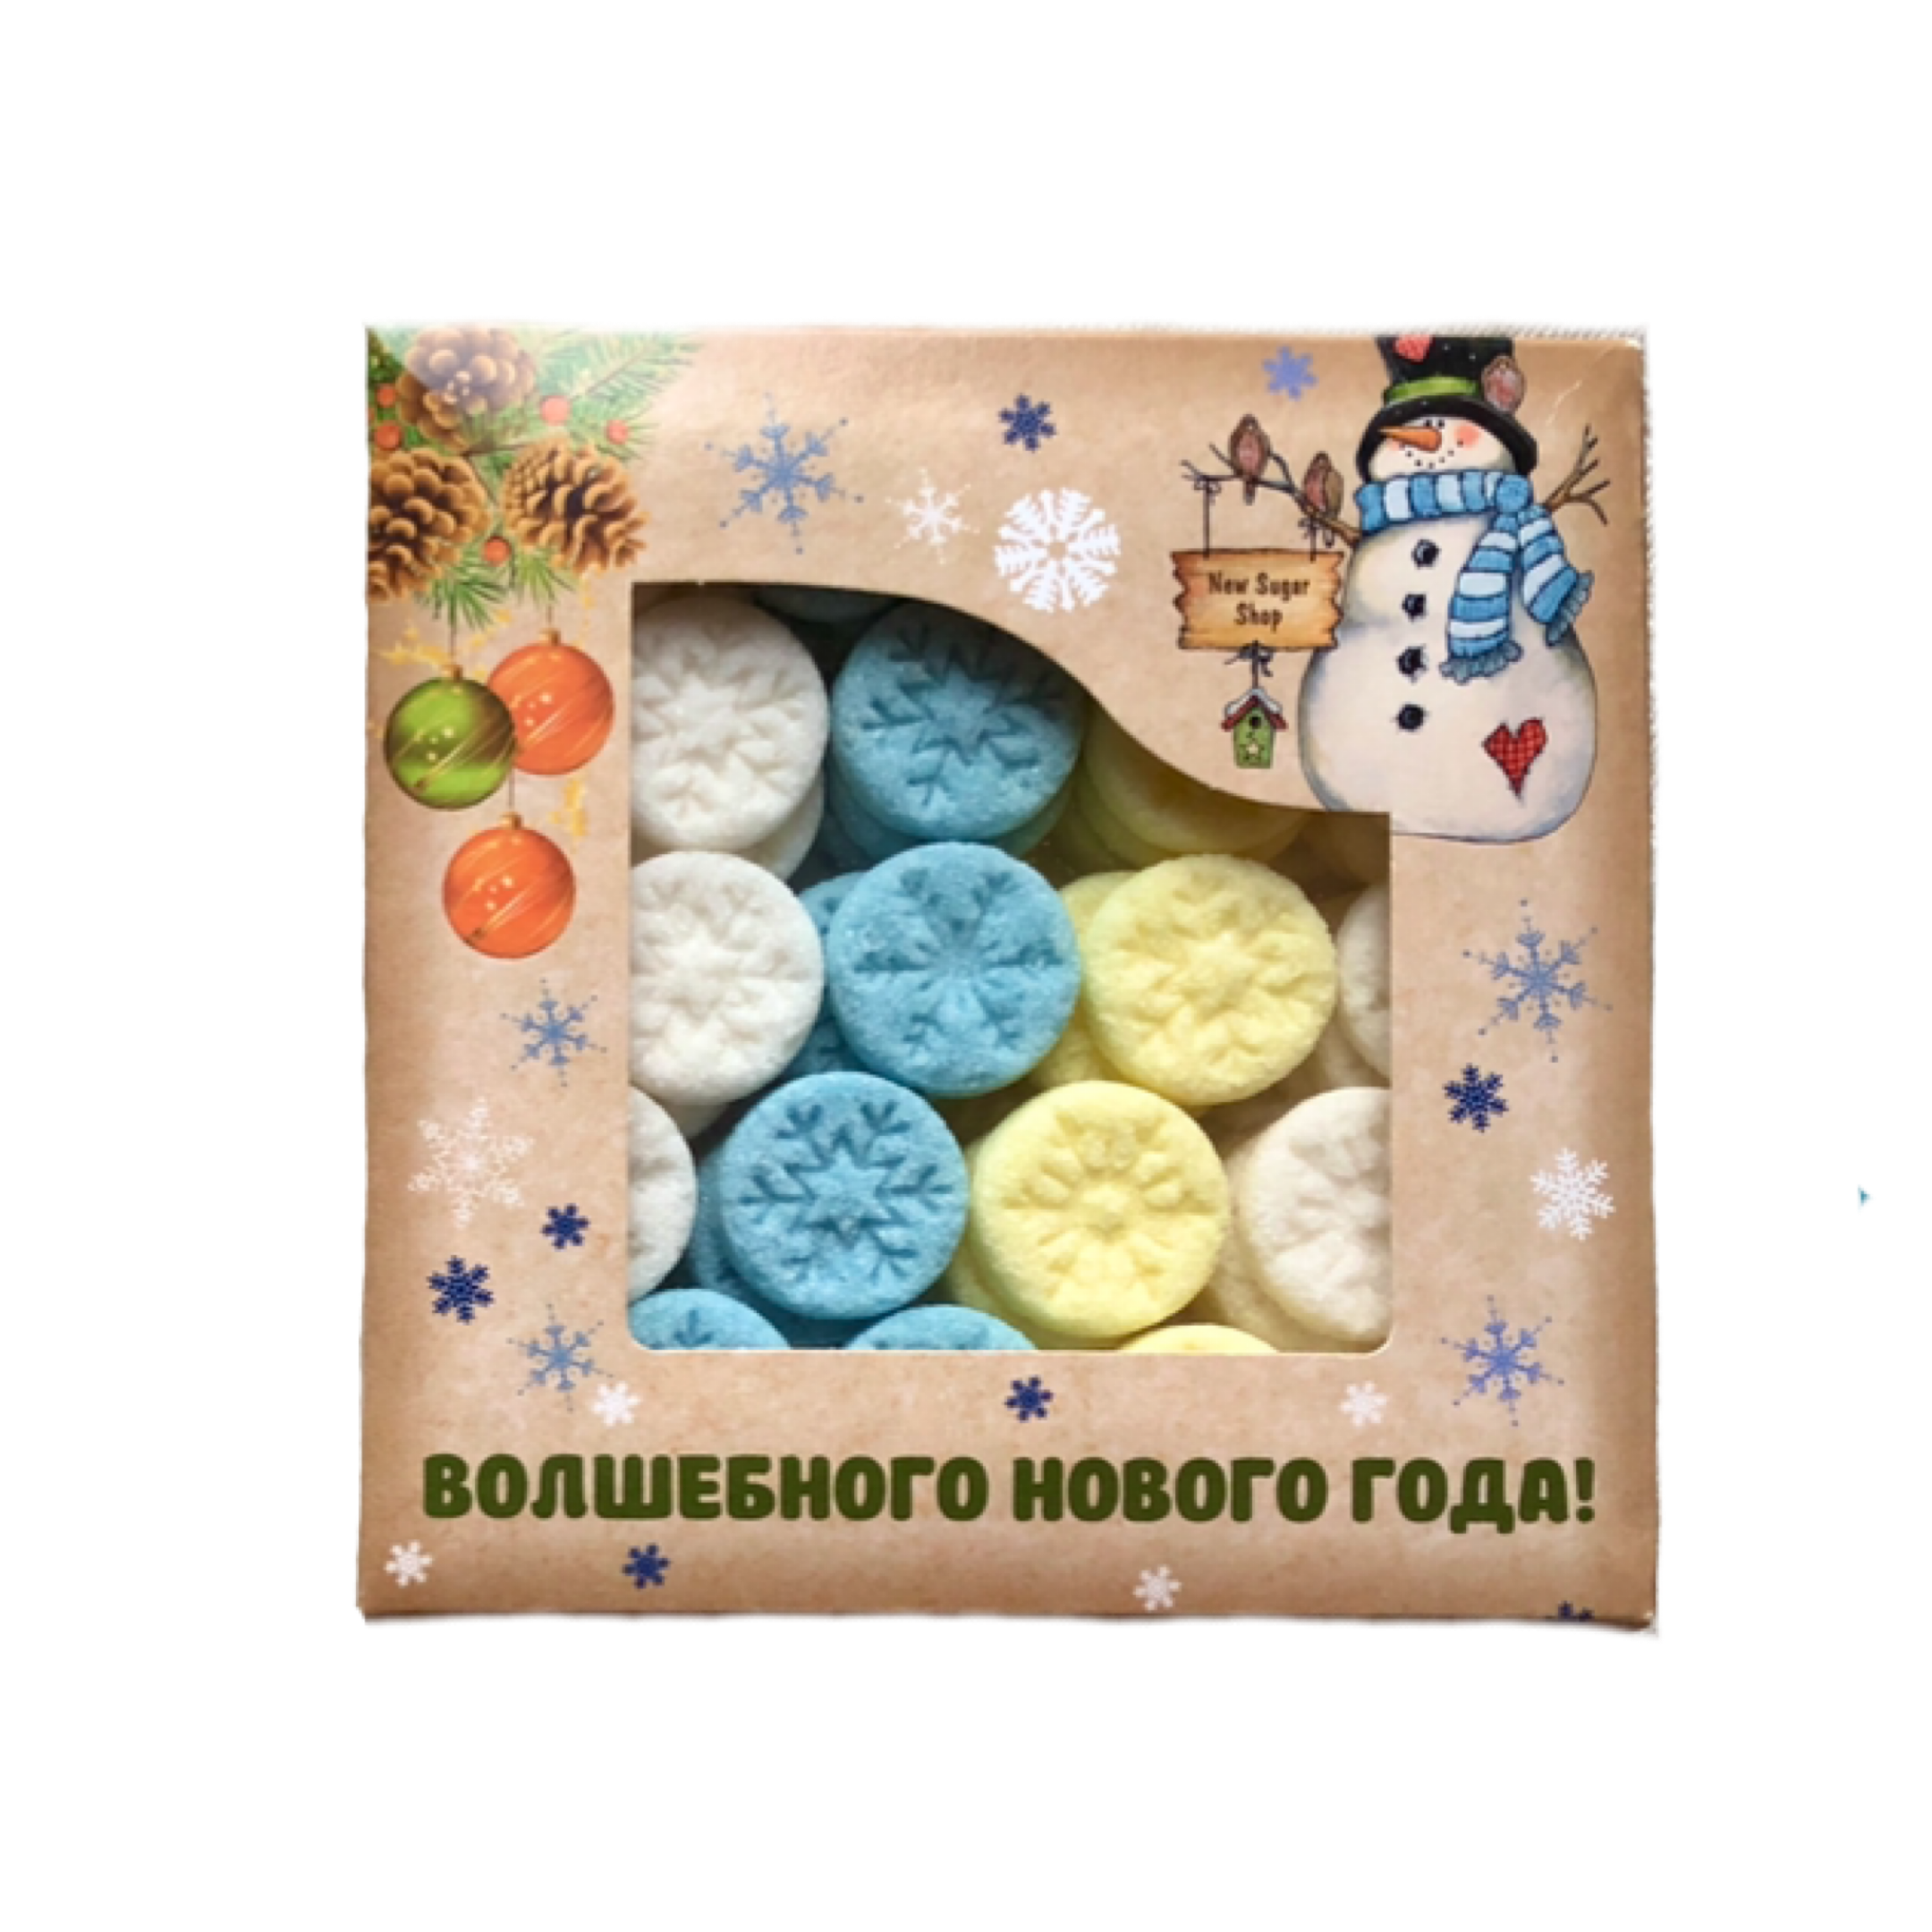 "Снежинки" Фигурный сахар цветной микс, Box, 145 г